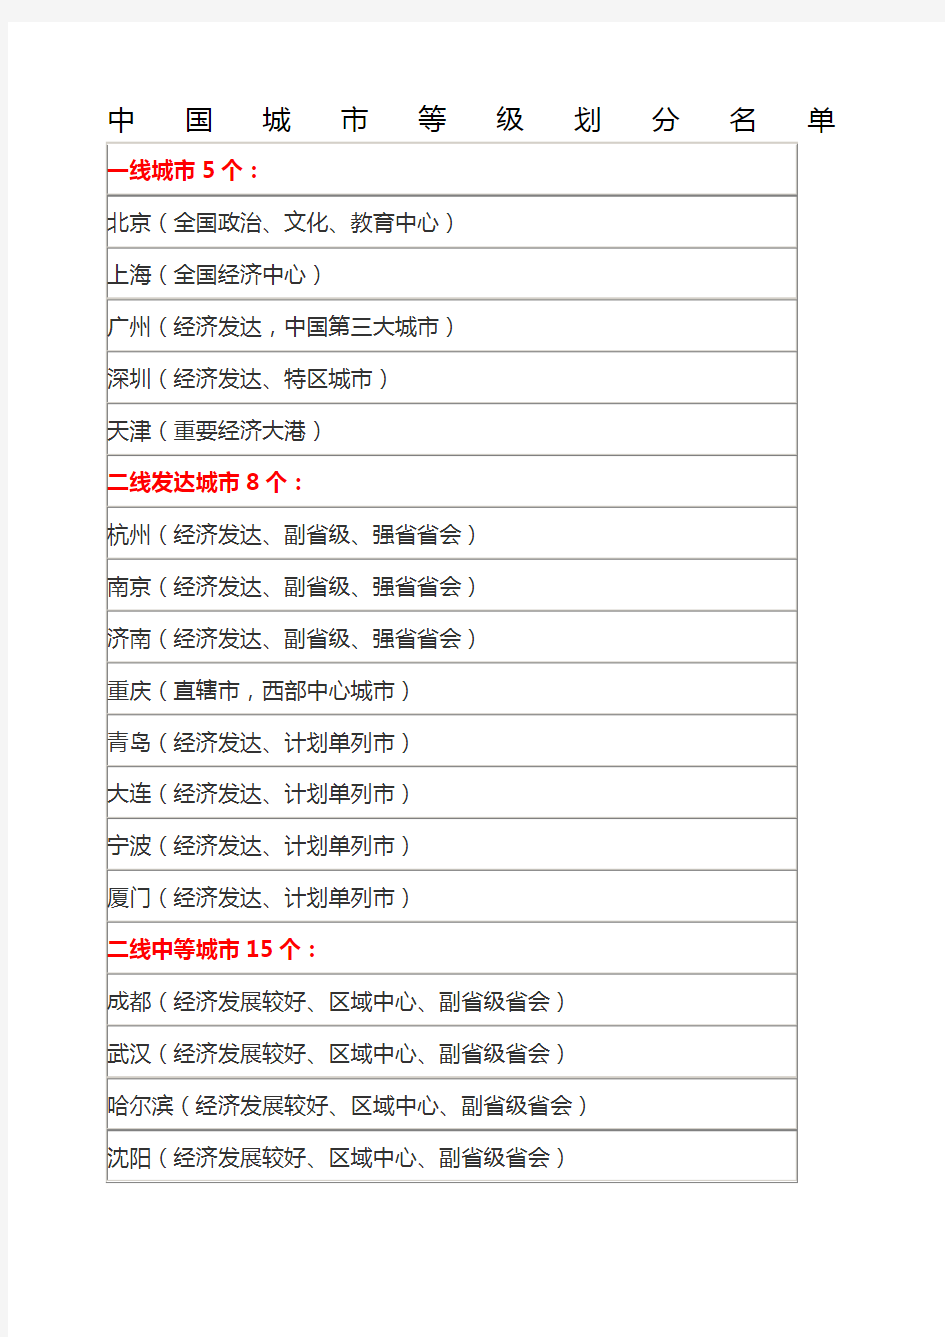 中国城市等级划分名单